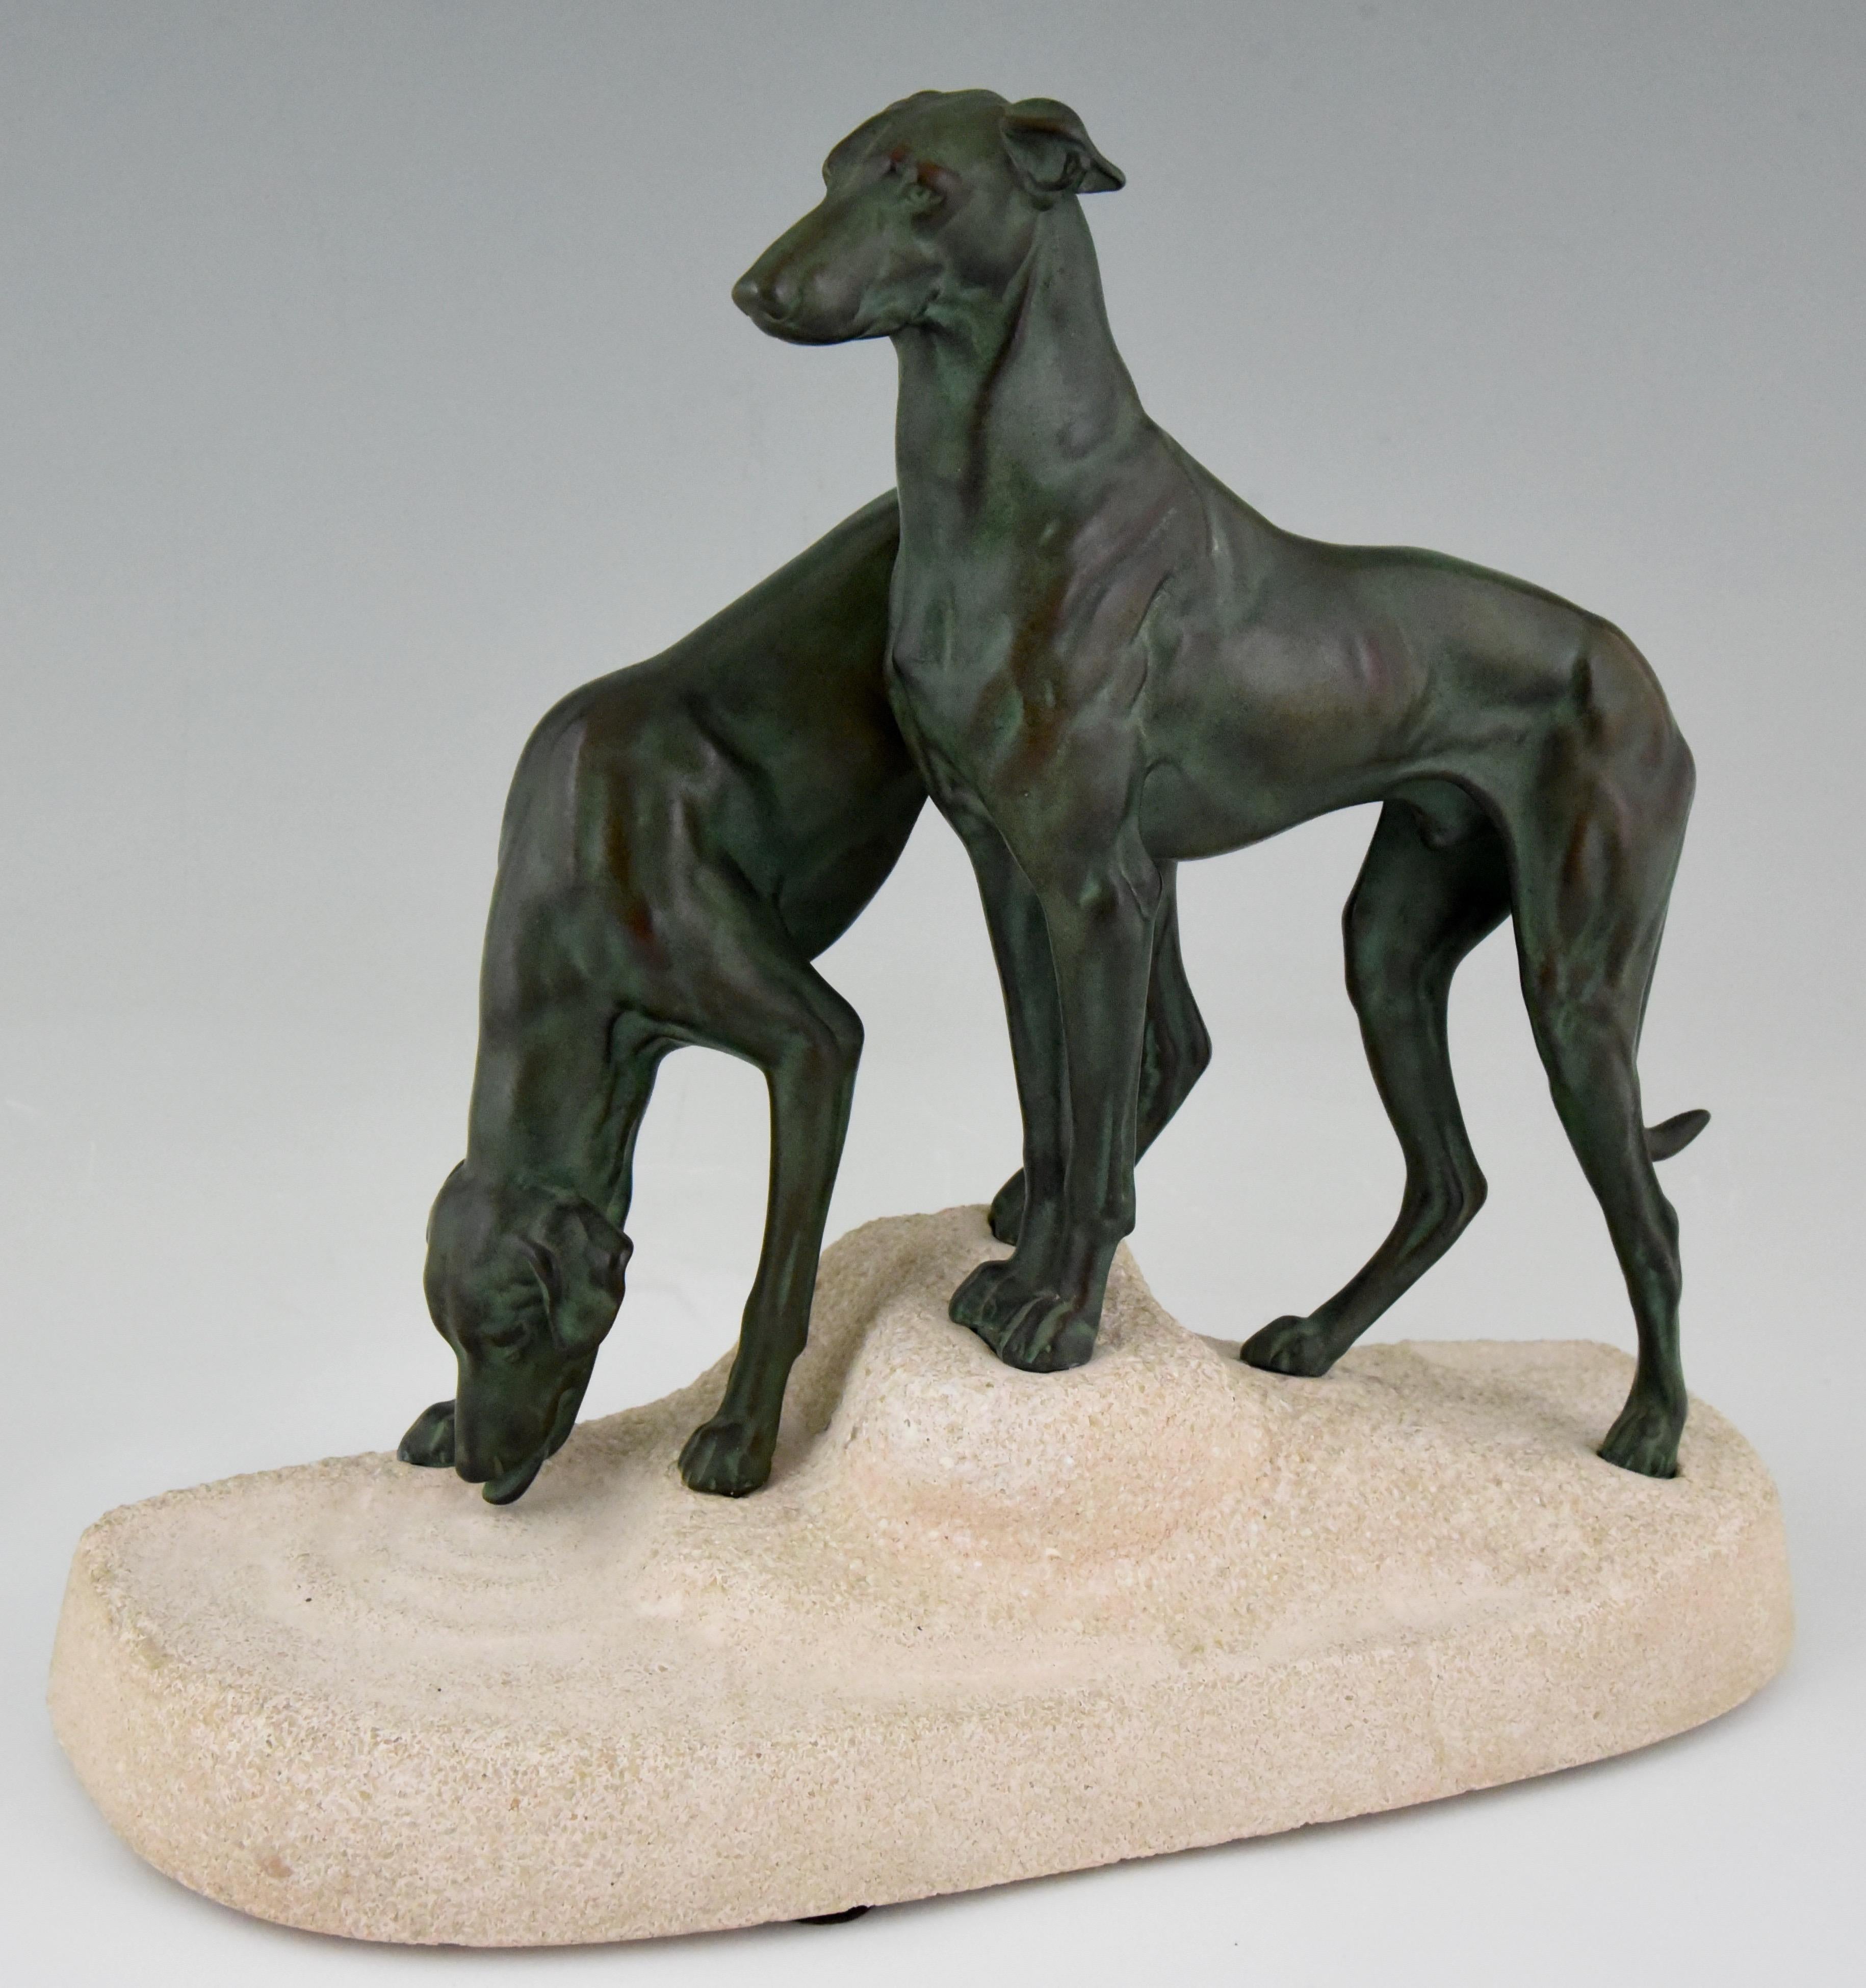 Art Deco sculpture of two greyhounds, “Soif du desert